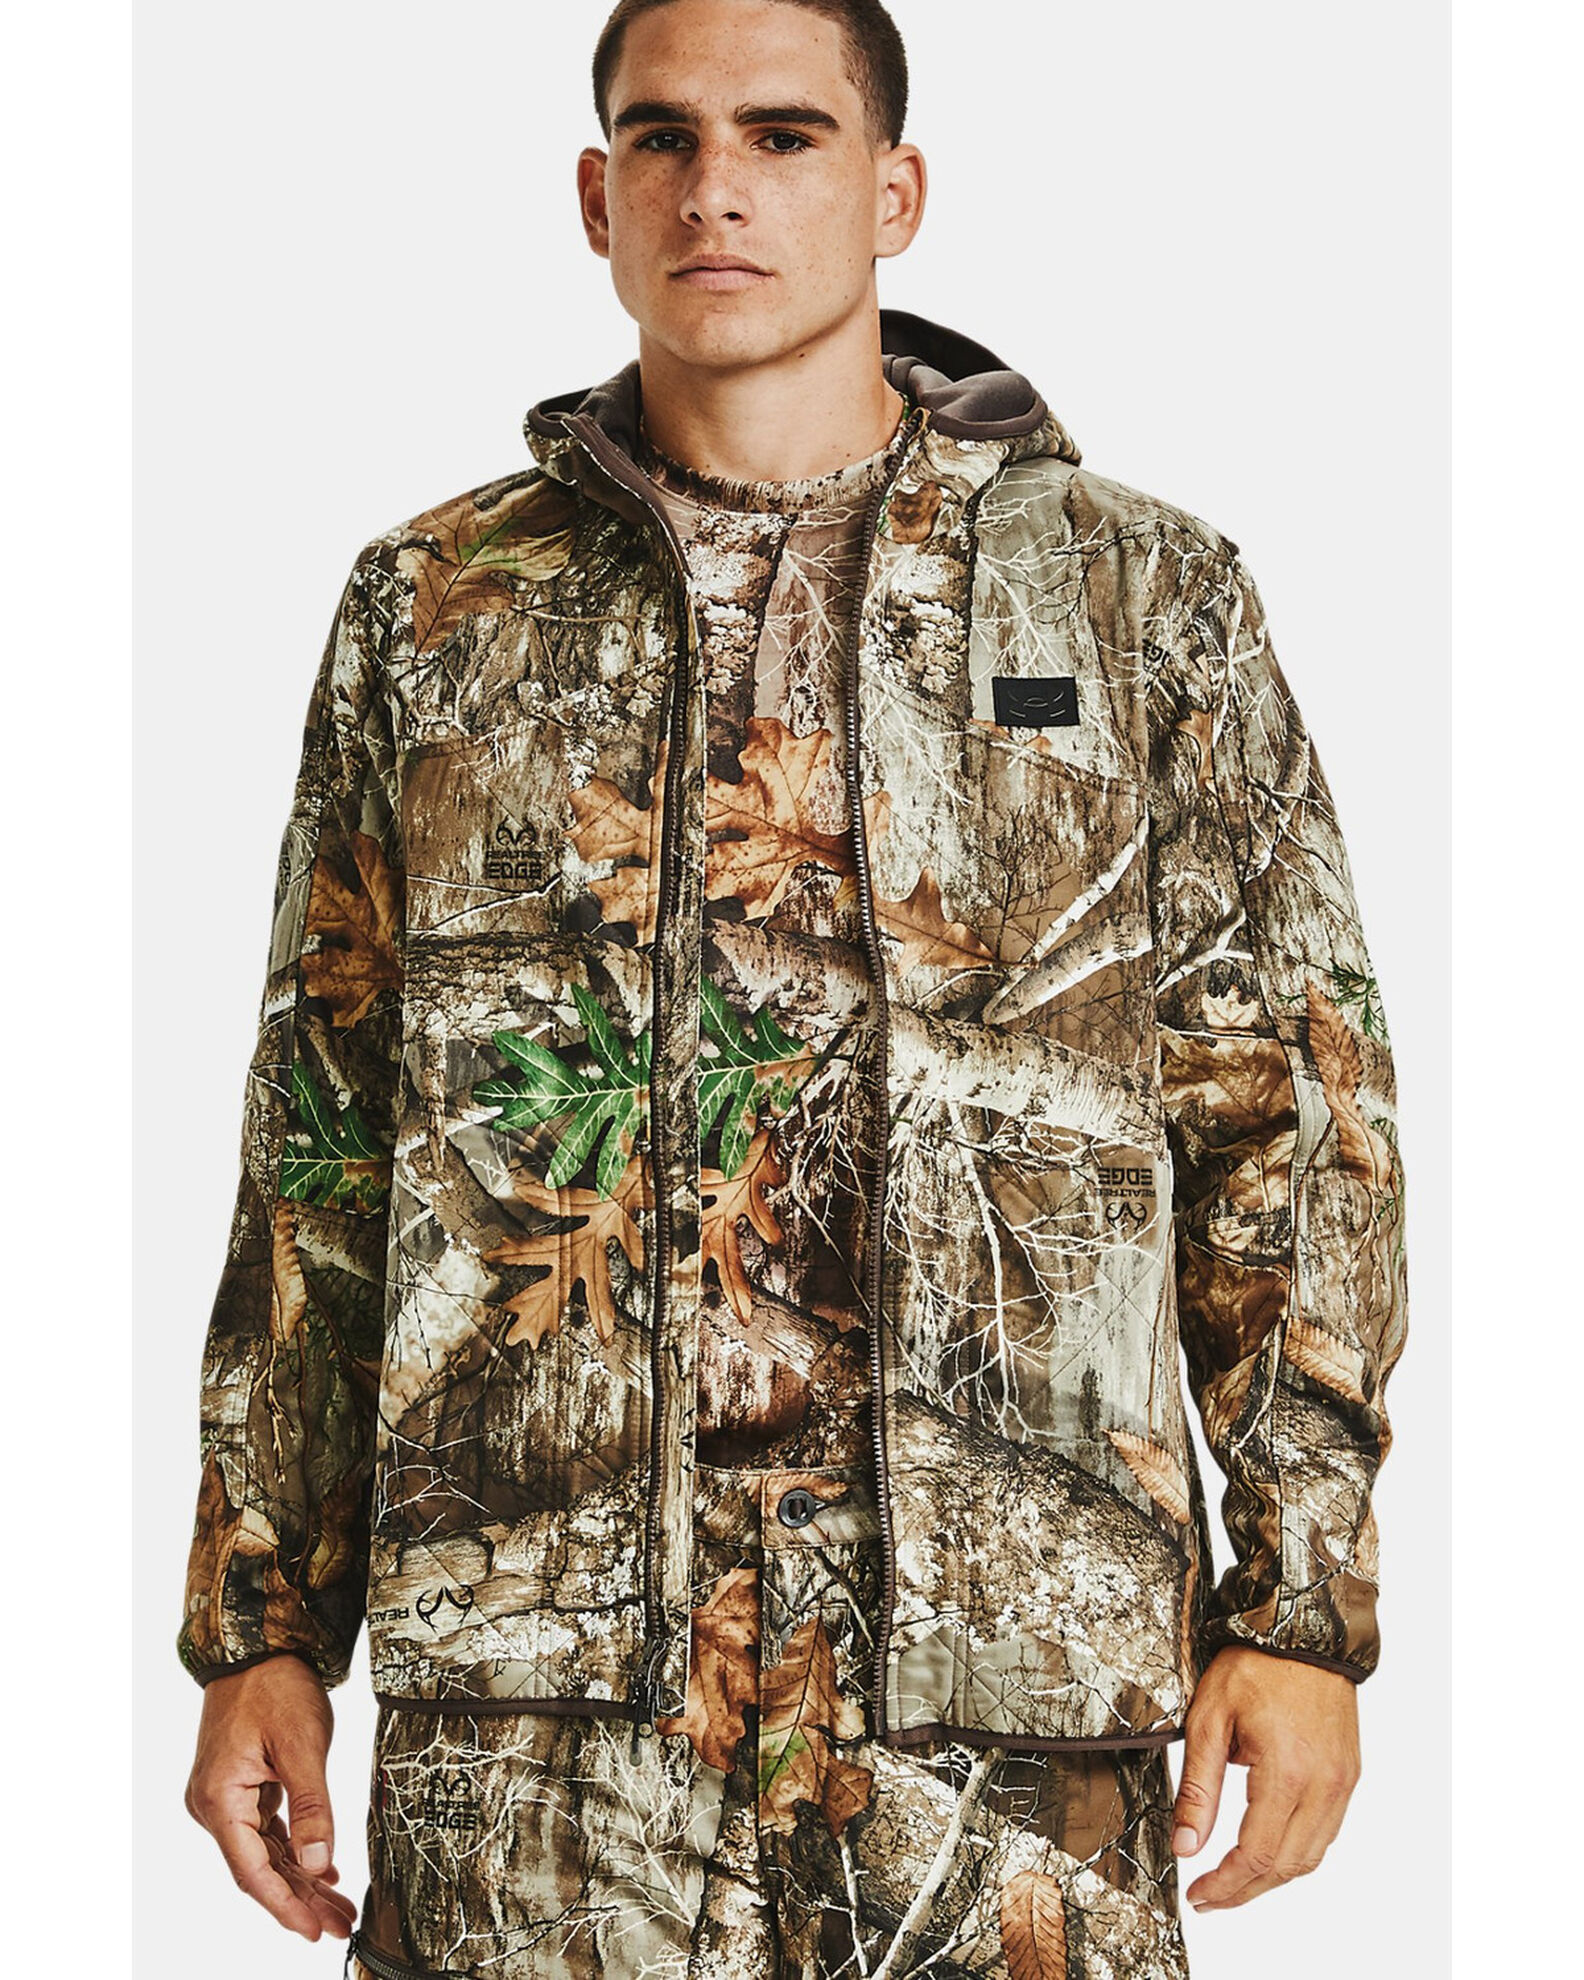 Cartero Limpiamente expedición Under Armour Men's Realtree Camo Brow Tine Work Jacket - Country Outfitter